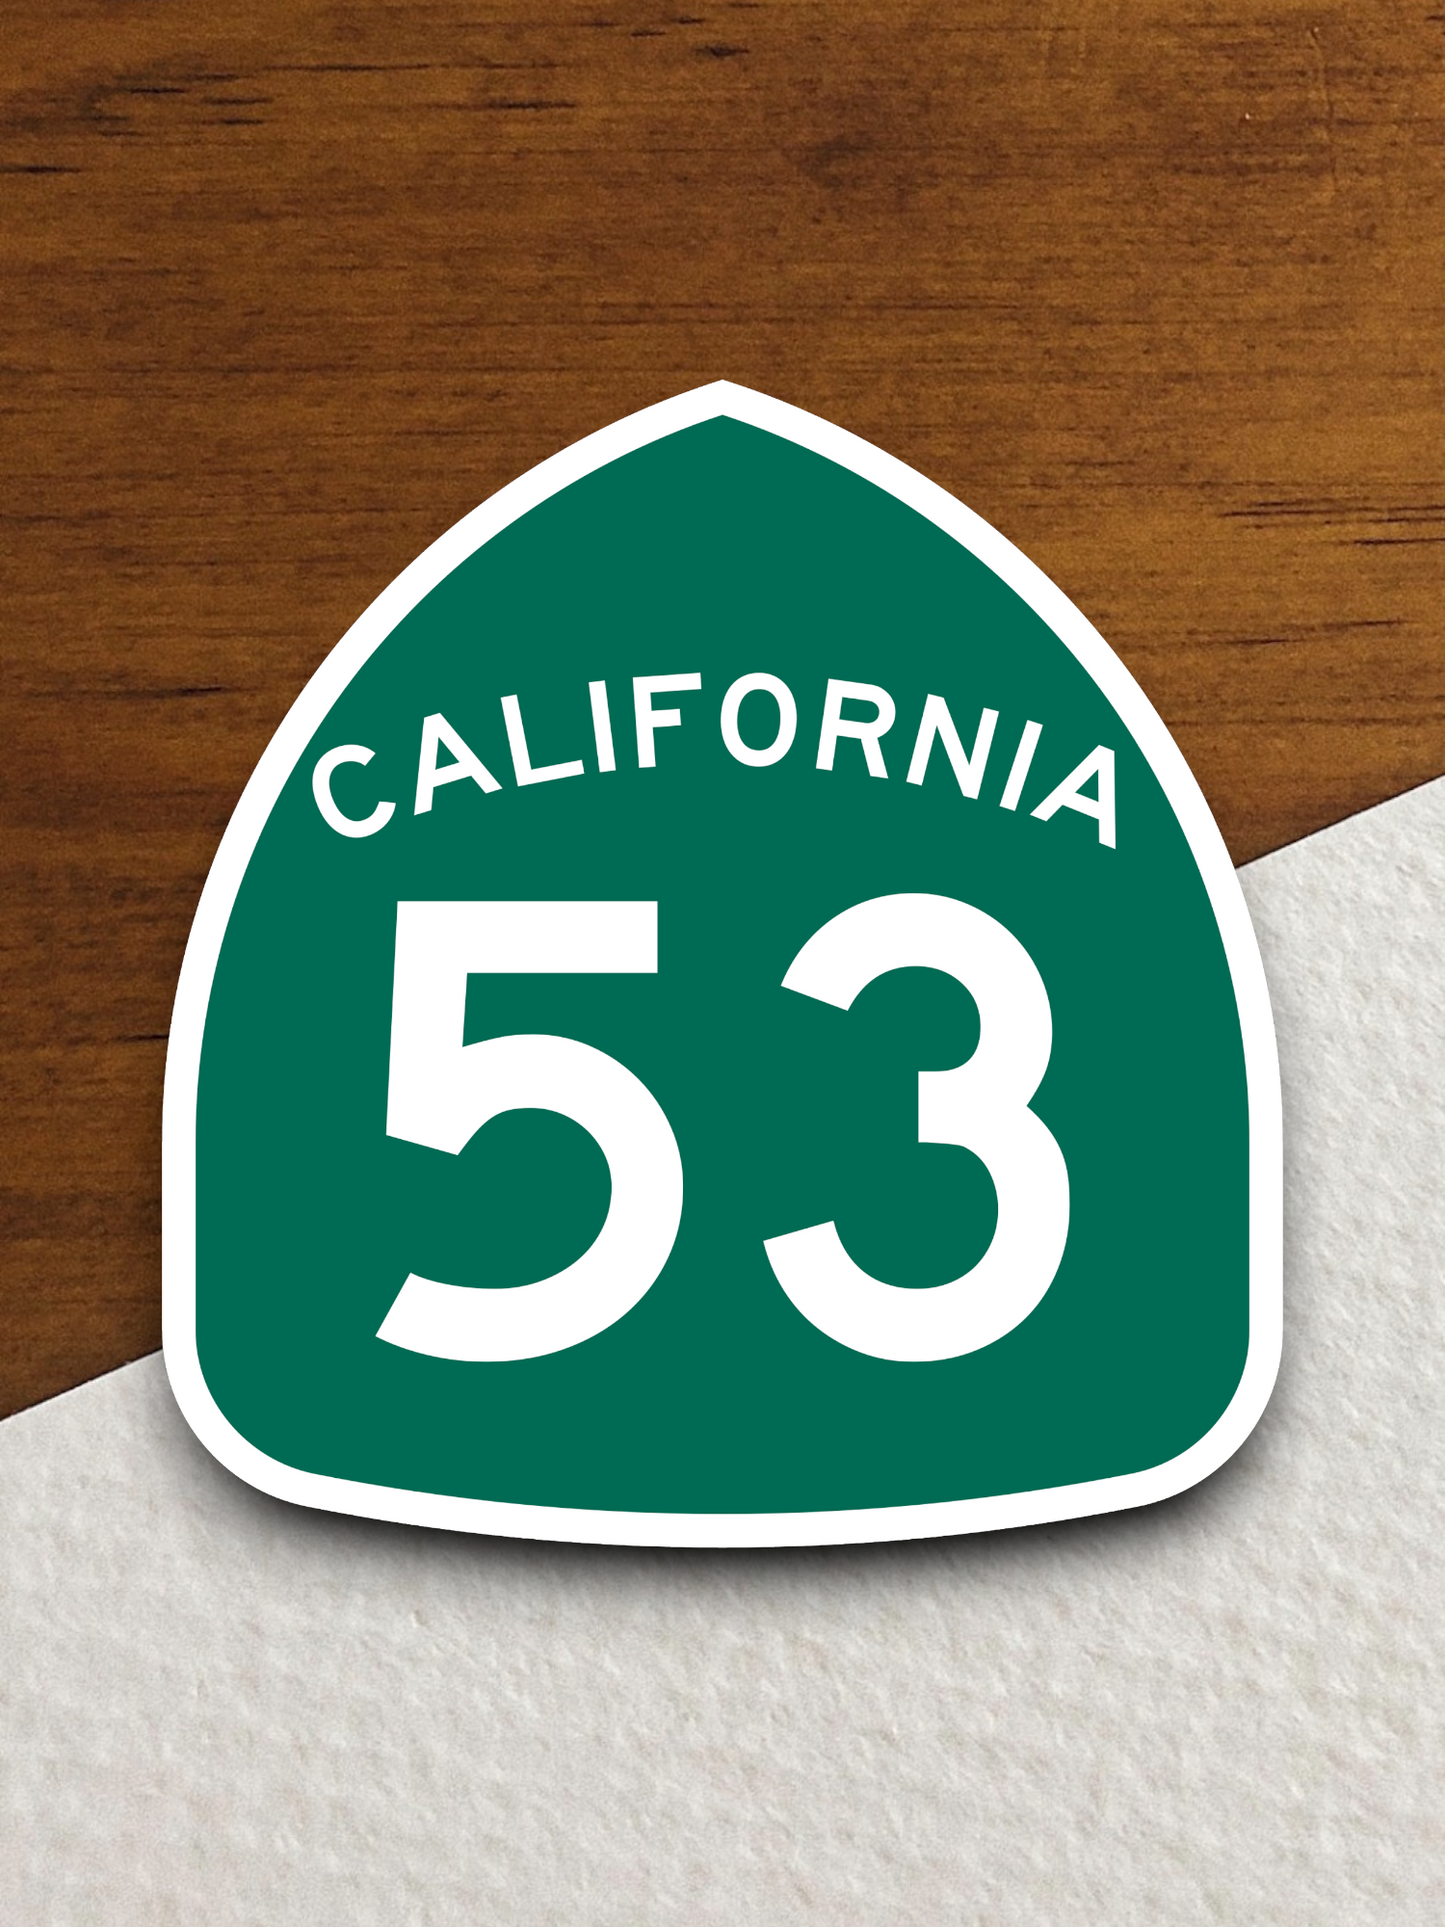 California State Route 53 Sticker